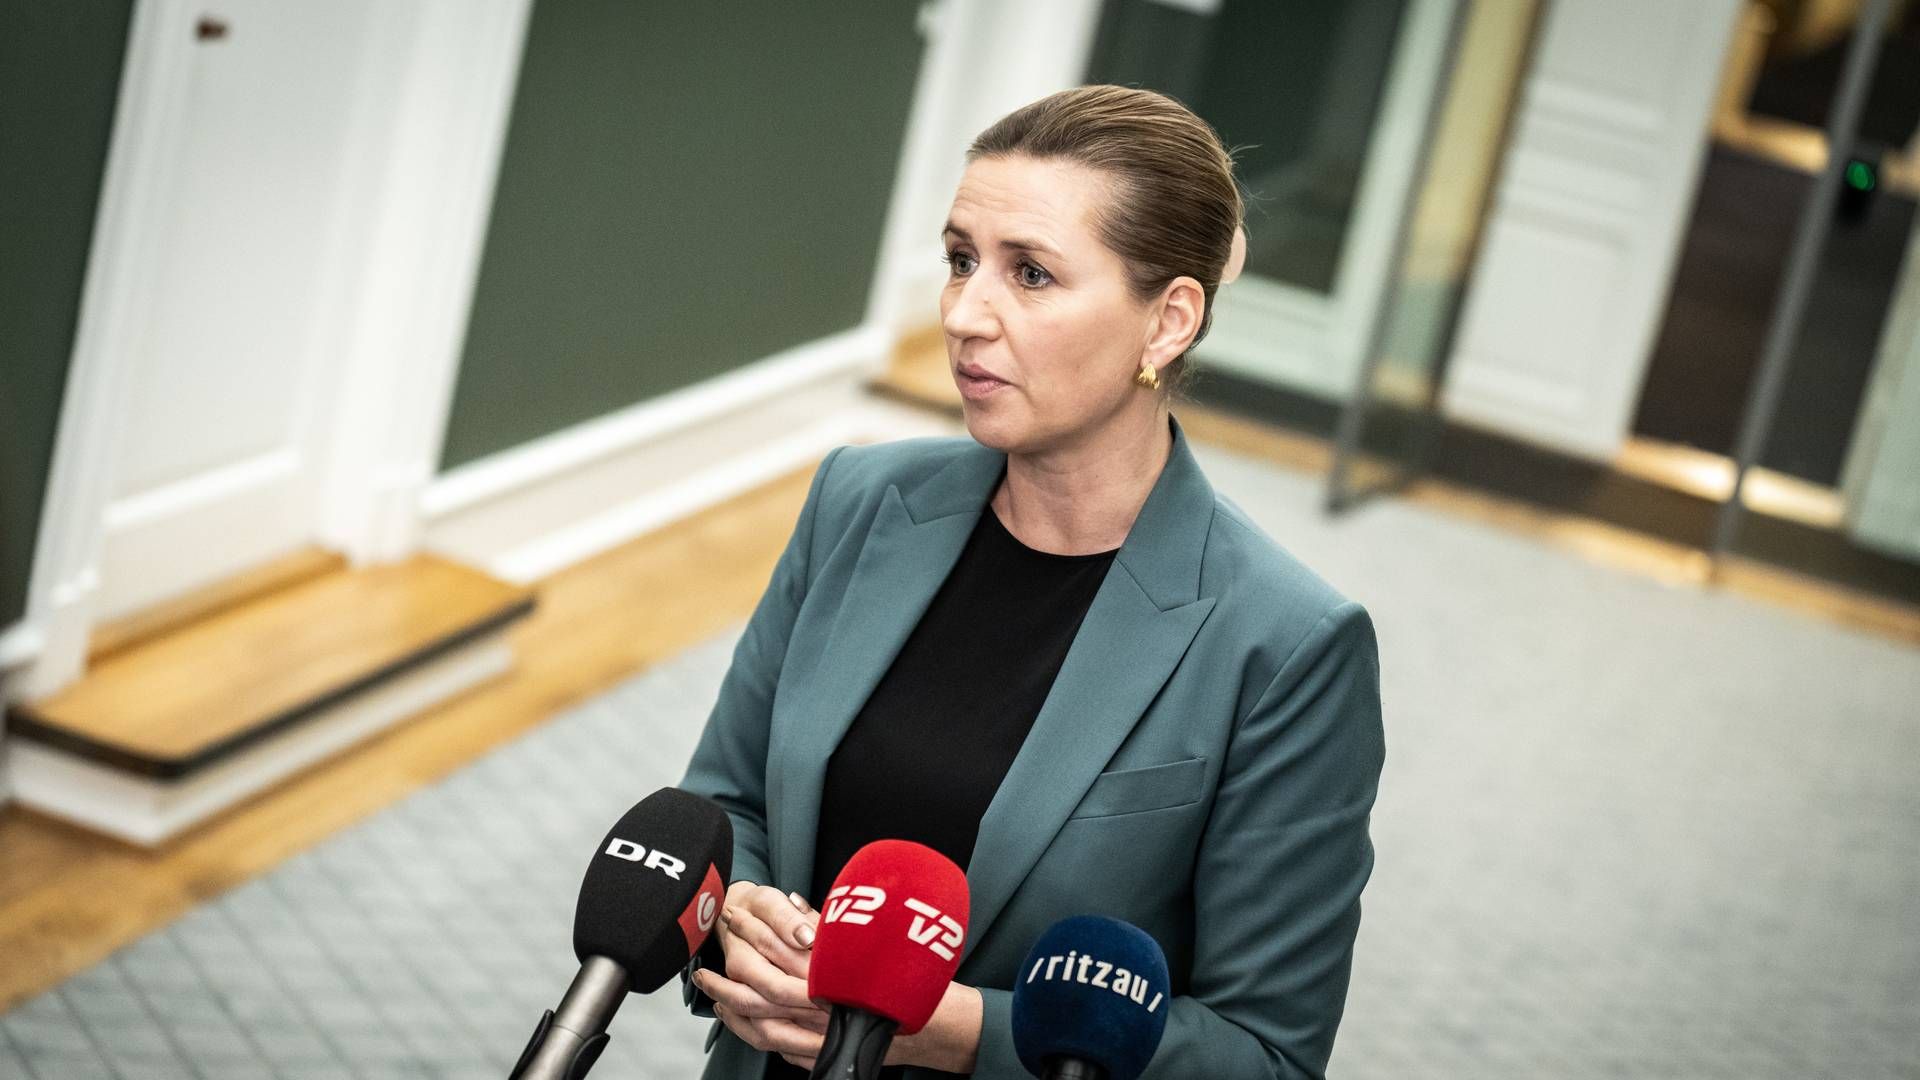 Flere partier har krævet en uvildig advokatvurdering af statsminister Mette Frederiksens retlige ansvar i minksagen. | Foto: Emil Helms